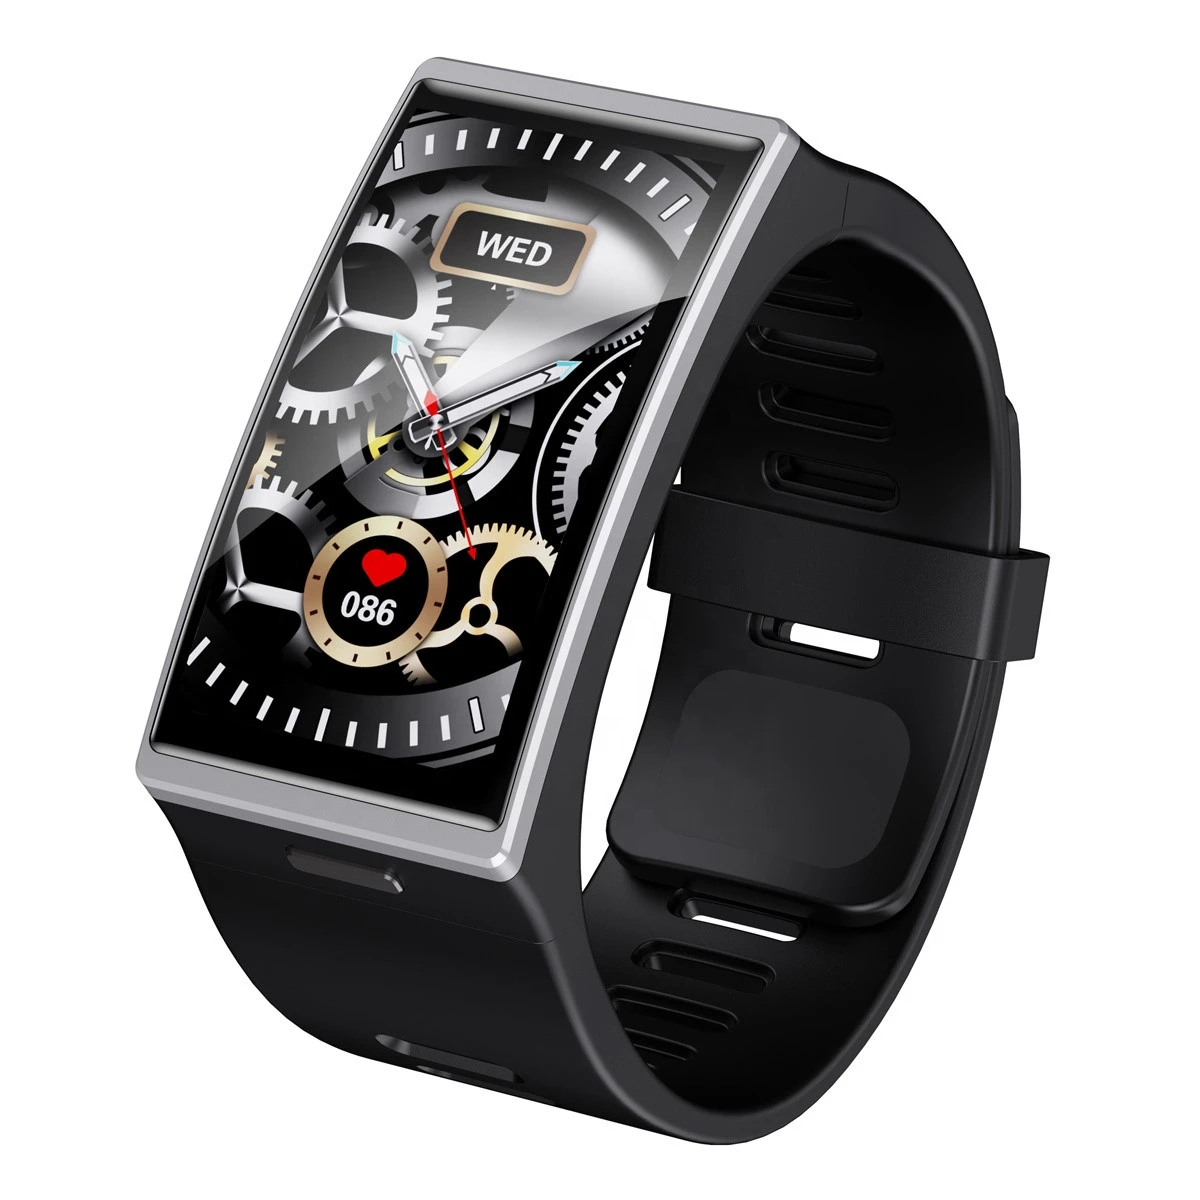 DM12 Fitness Band SDK OEM IP68 Waterproof Sport Wrist Bracelet Heart Rate Functional Watch Smart Bracelet